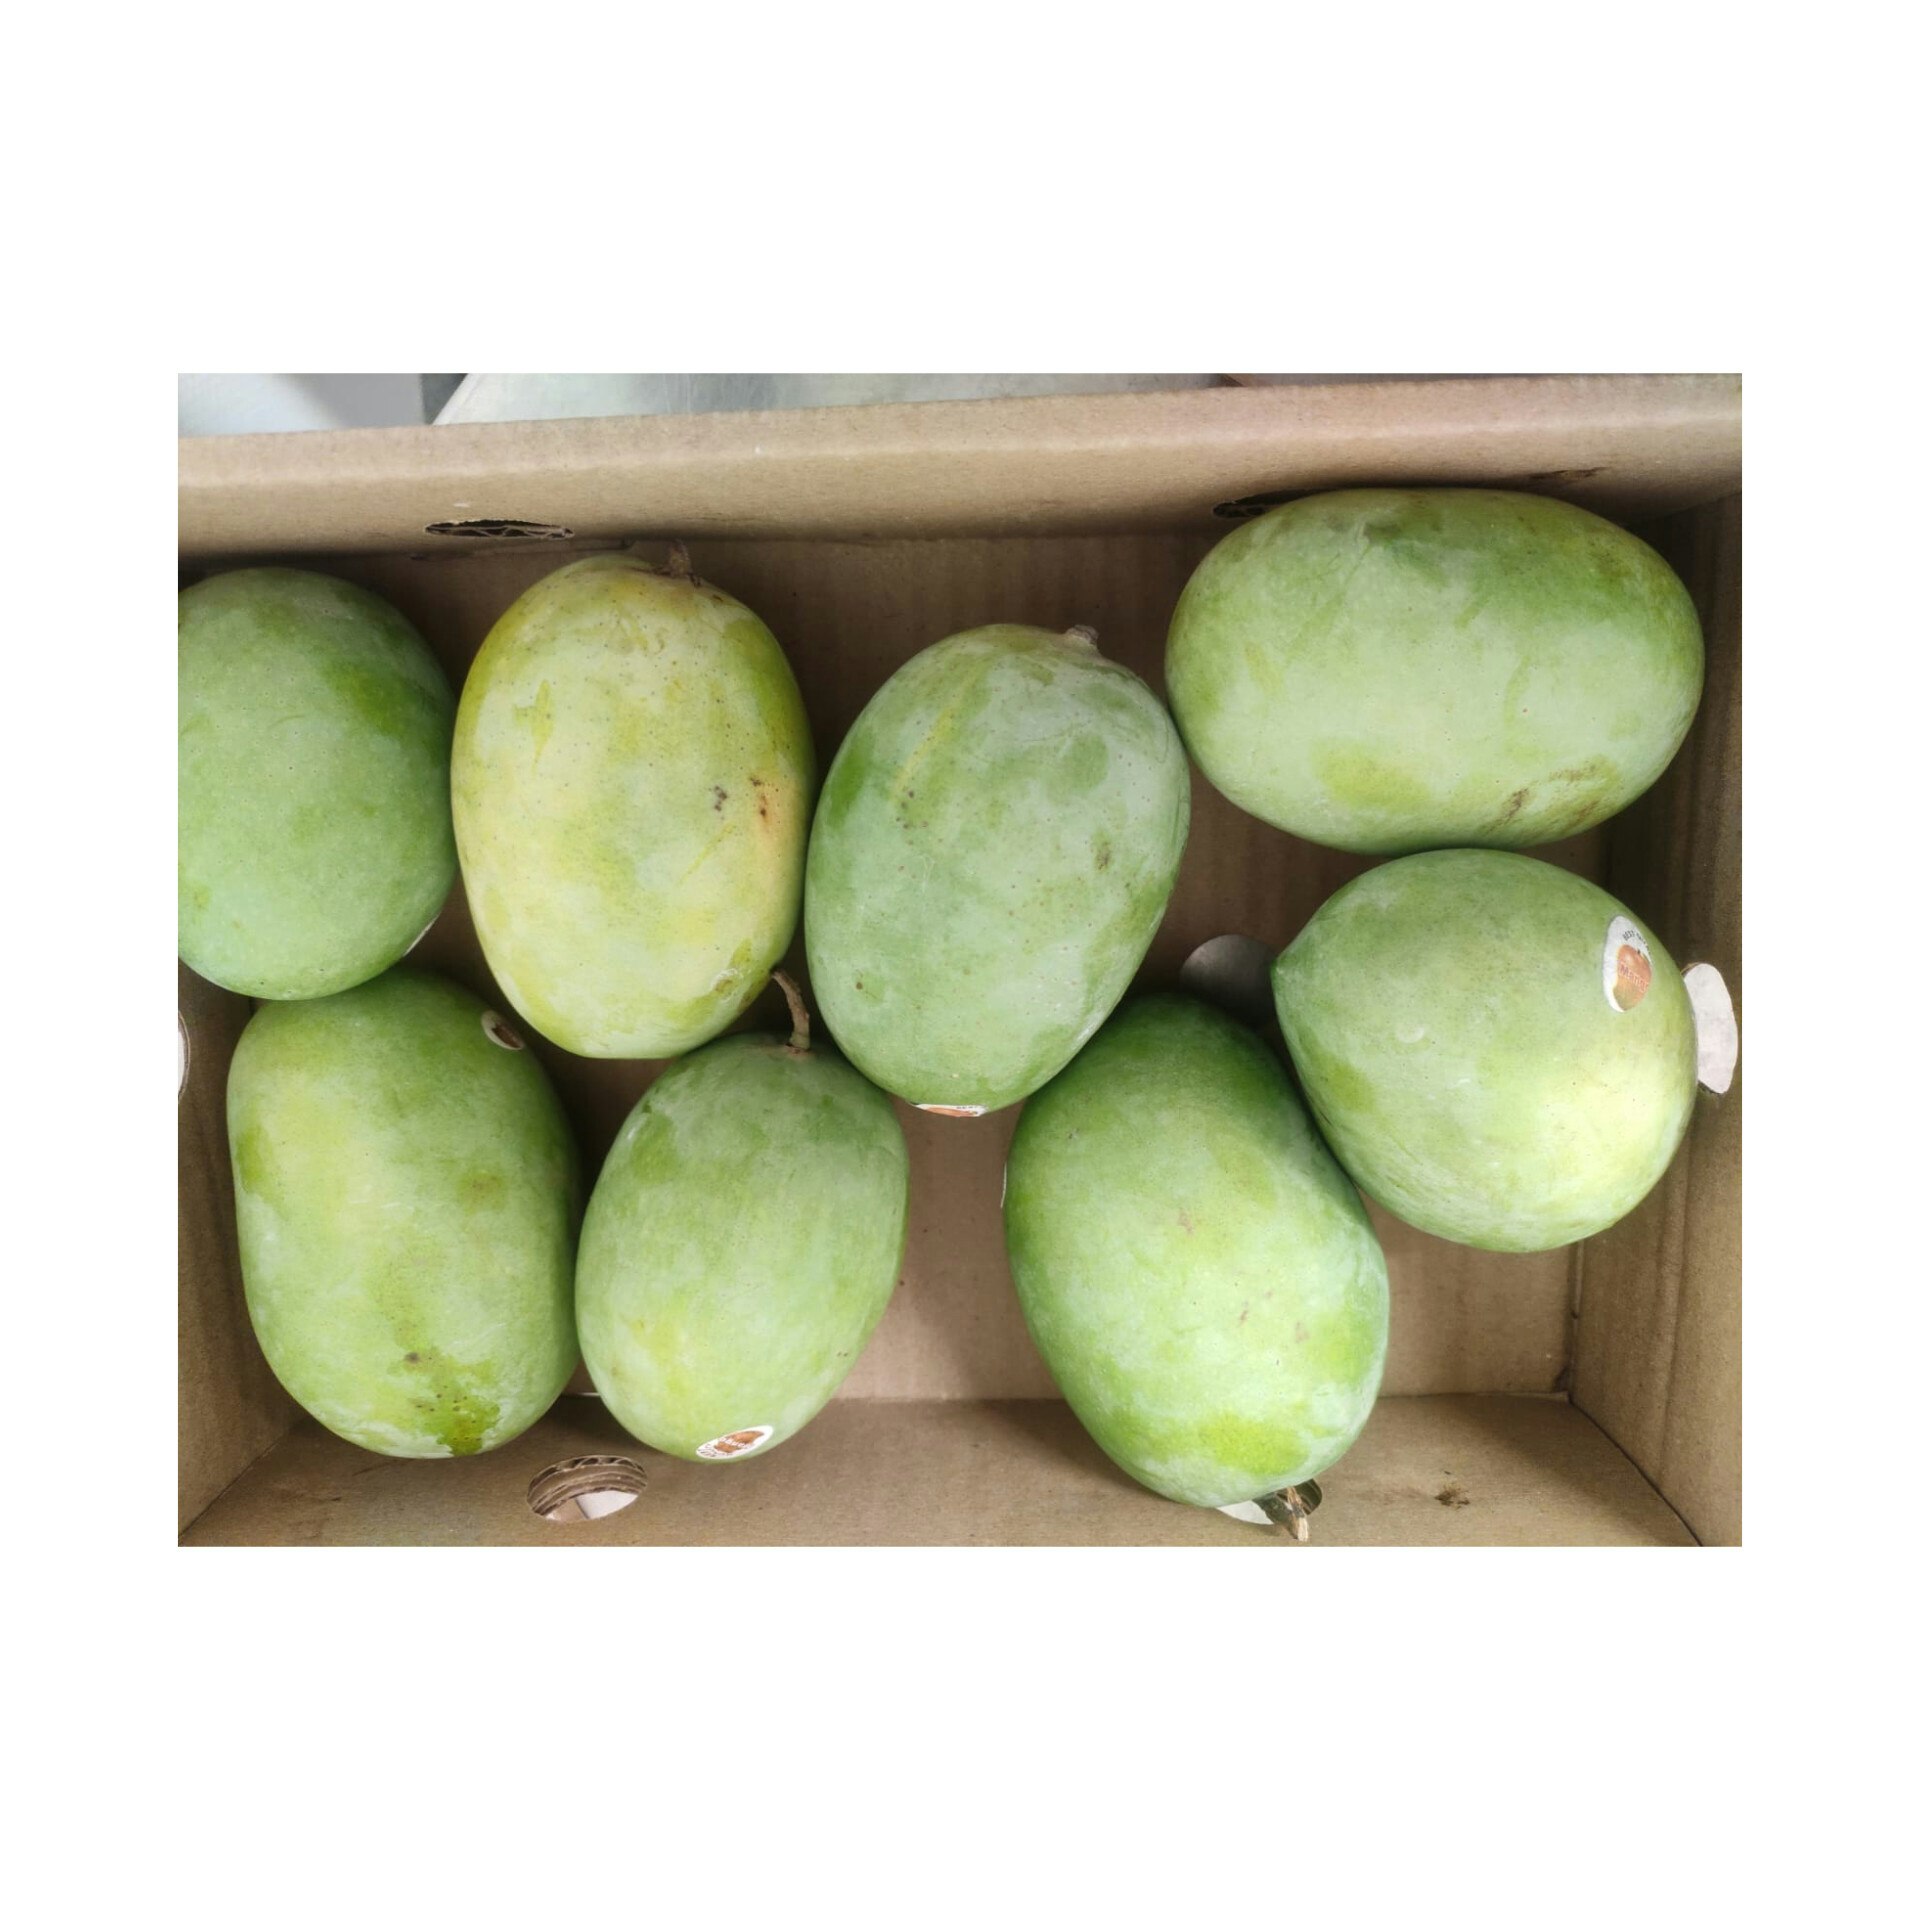 Fresh Langra Mango 1 Box (approx  1- 1.5 kg) - 4 pcs